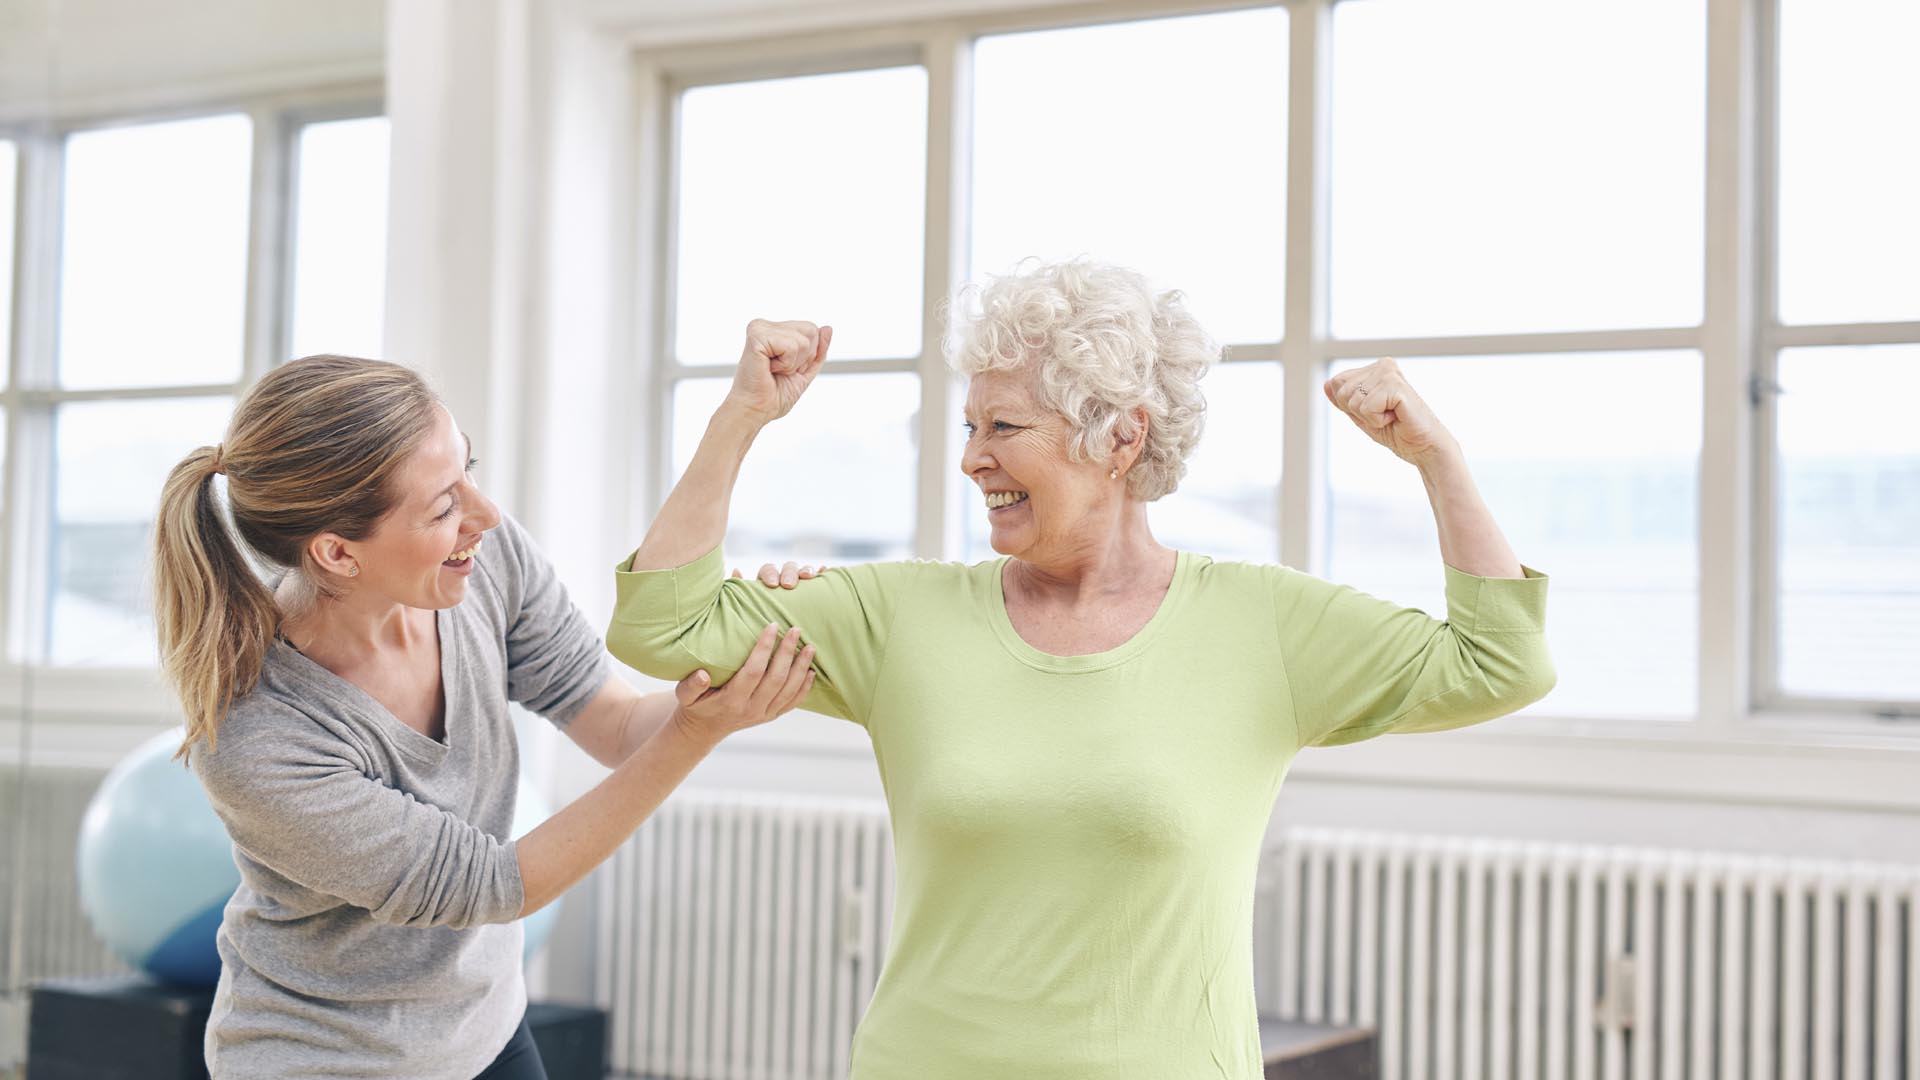 La edad no debe ser un impedimento para el ejercicio, si se es constante se mejorará la salud y se evitará perdida de movimiento